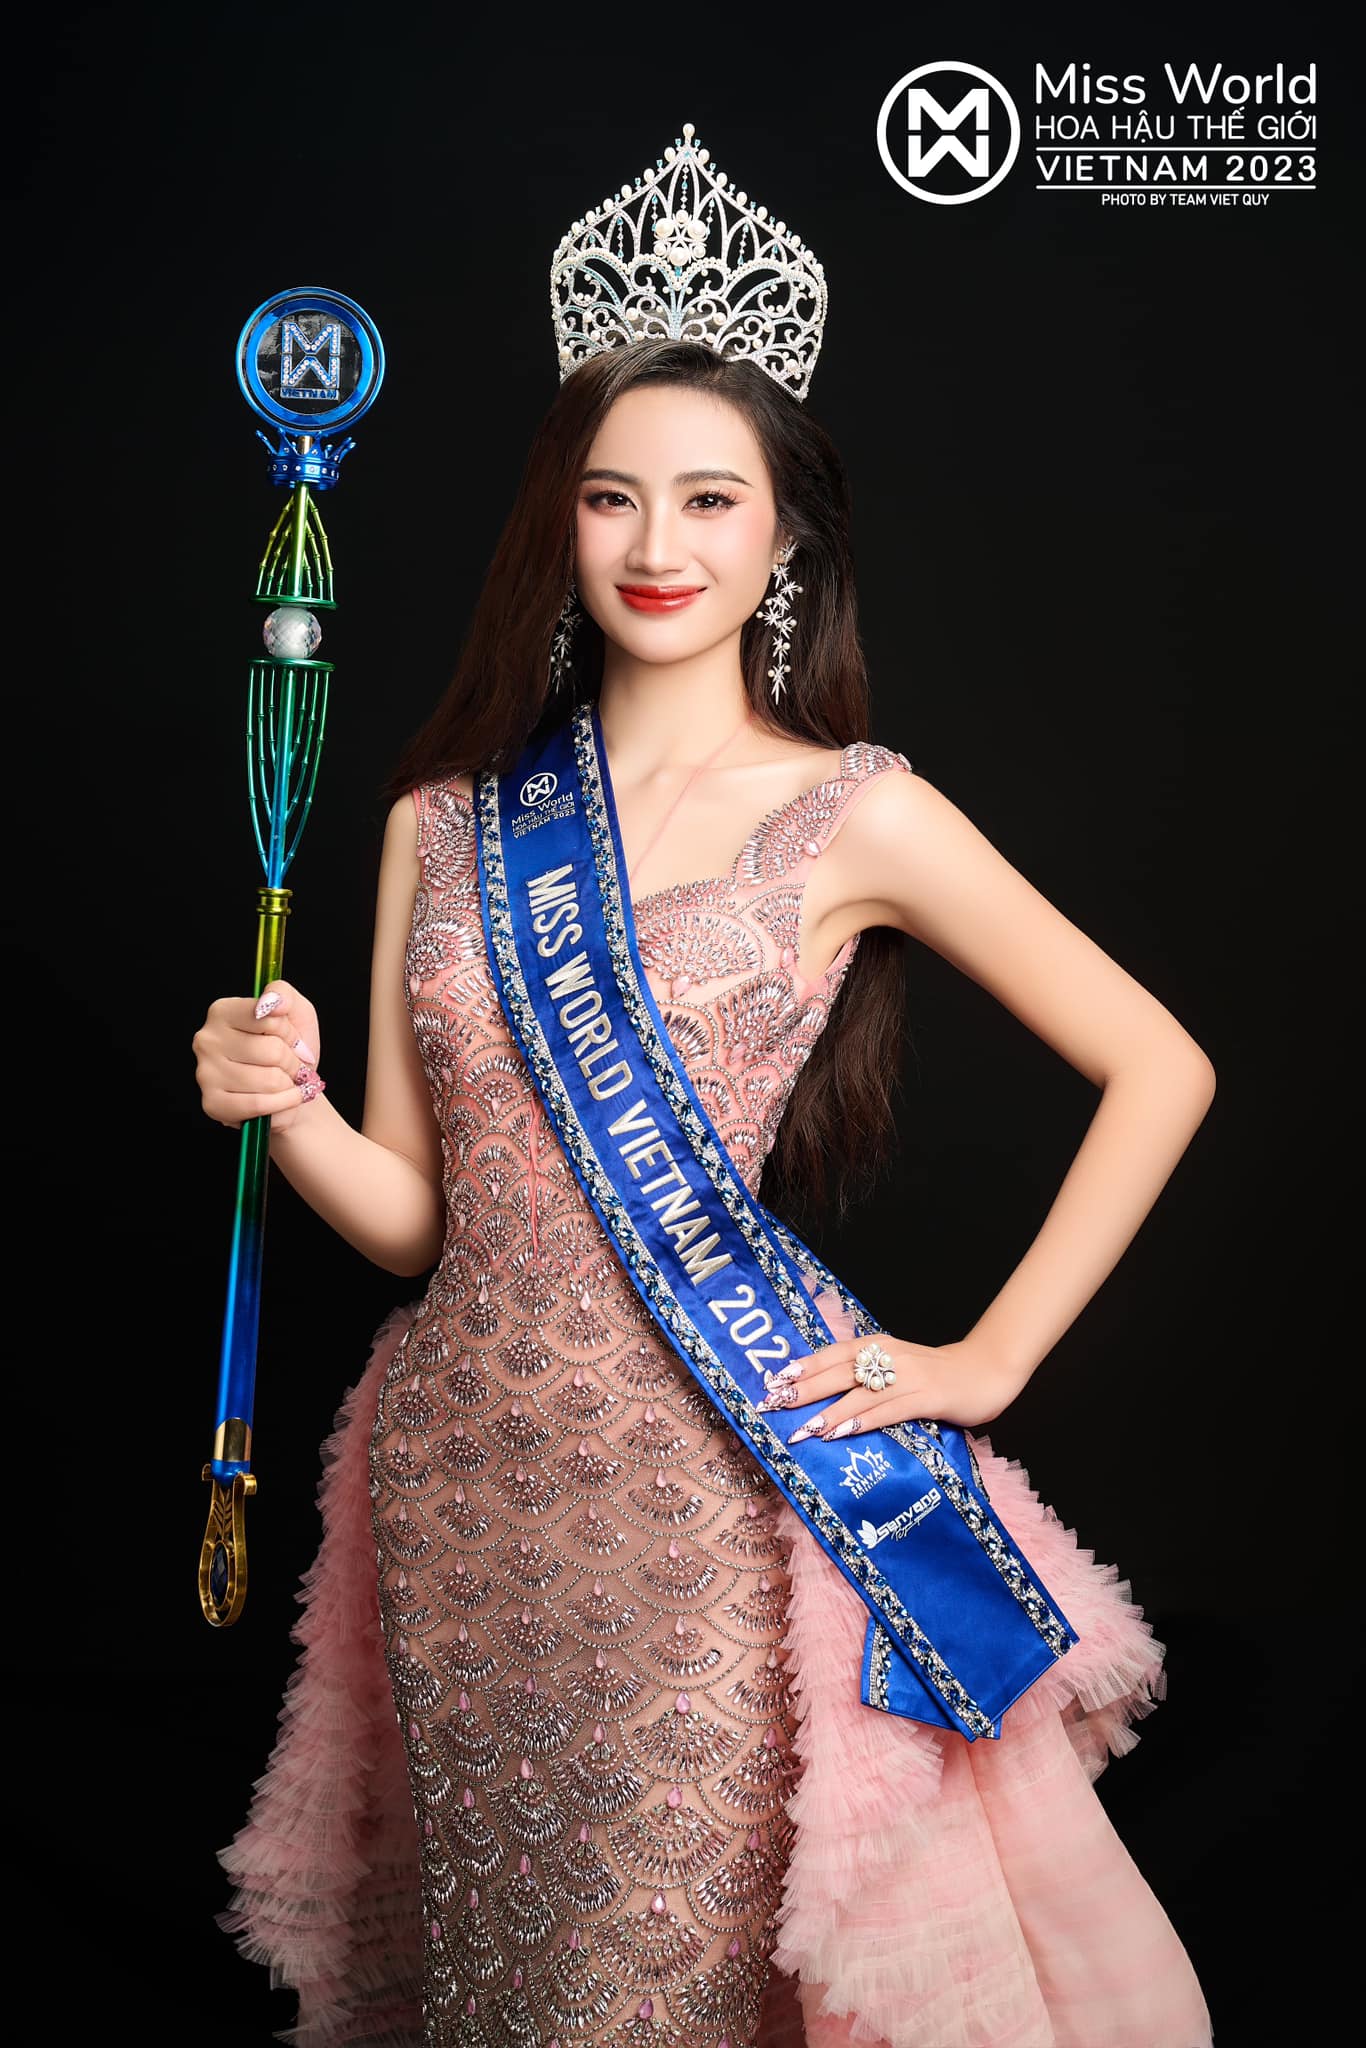 Sáng nay Sở Văn hóa Thể thao tỉnh Bình Định làm việc với BTC Miss World Vietnam, Ý Nhi có bị tước danh hiệu? - ảnh 1